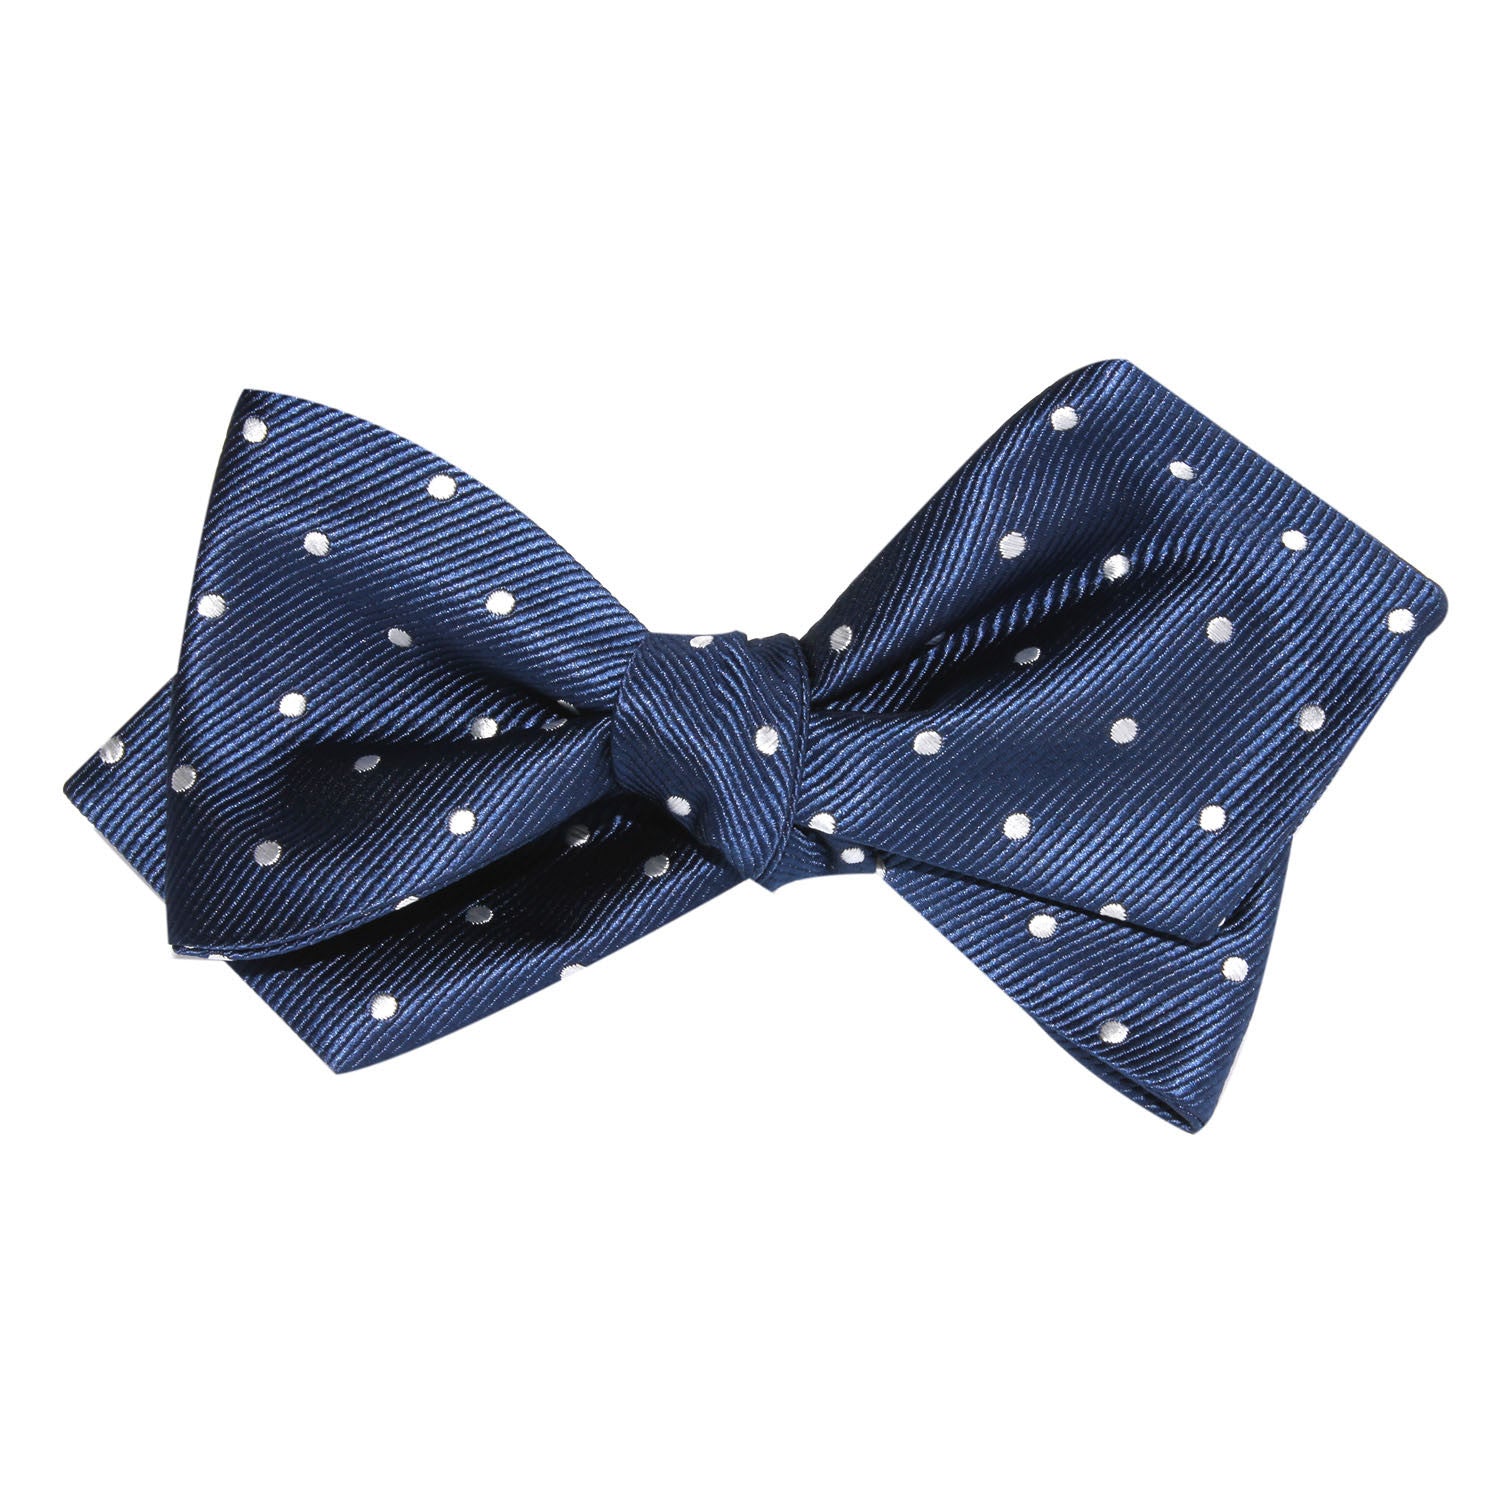 The OTAA Navy Blue with White Polka Dots Self Tie Diamond Tip Bow Tie 3